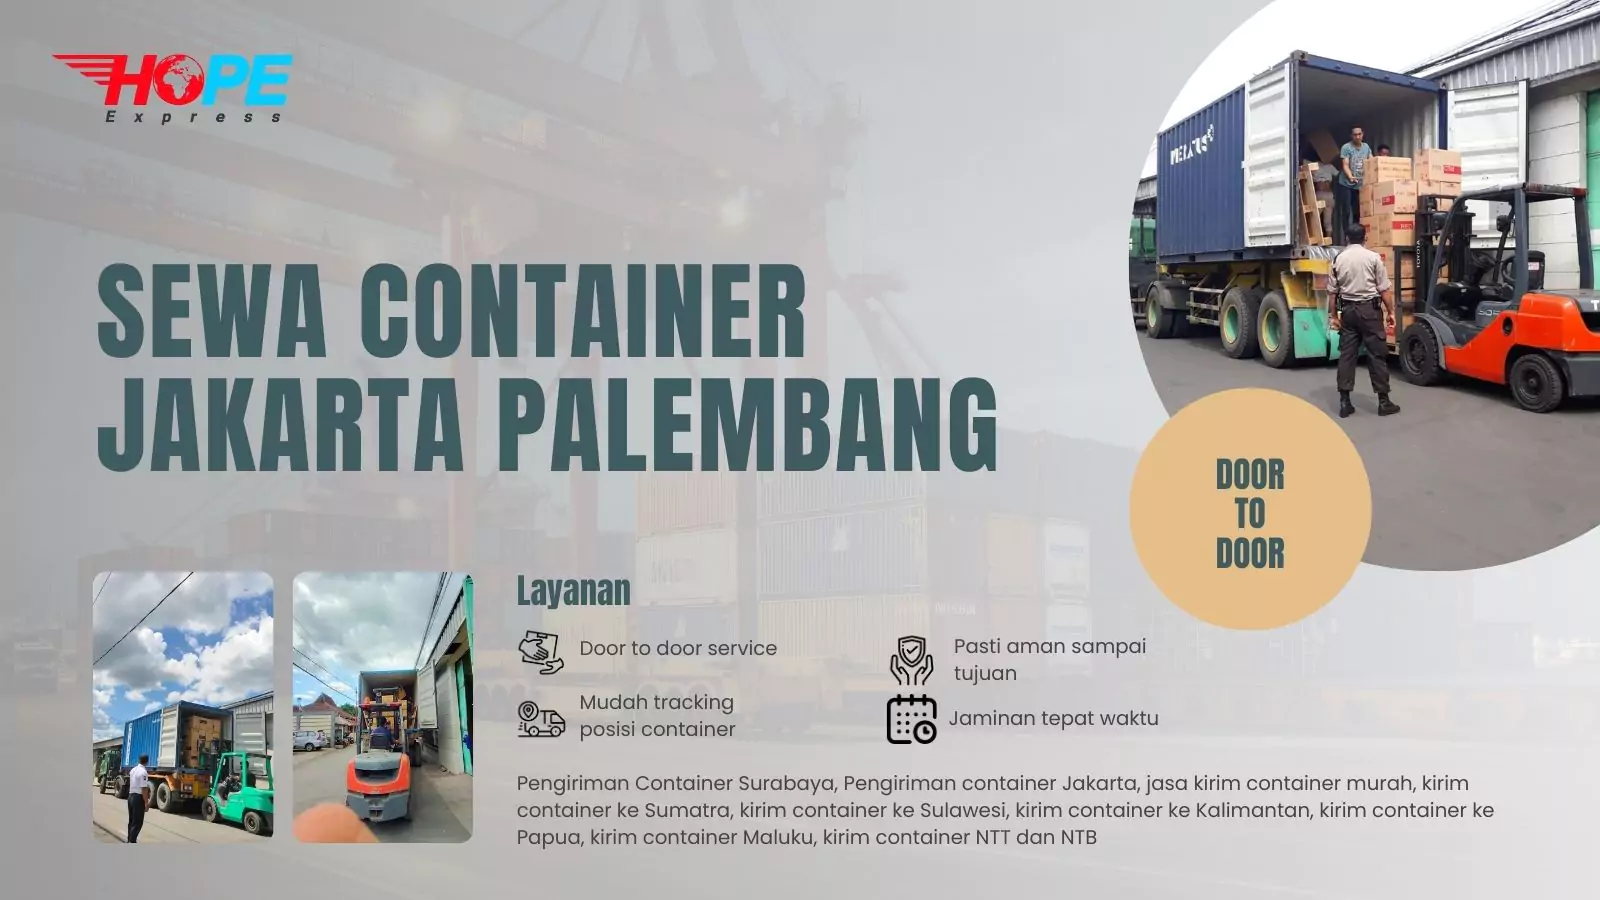 Sewa Container Jakarta Palembang